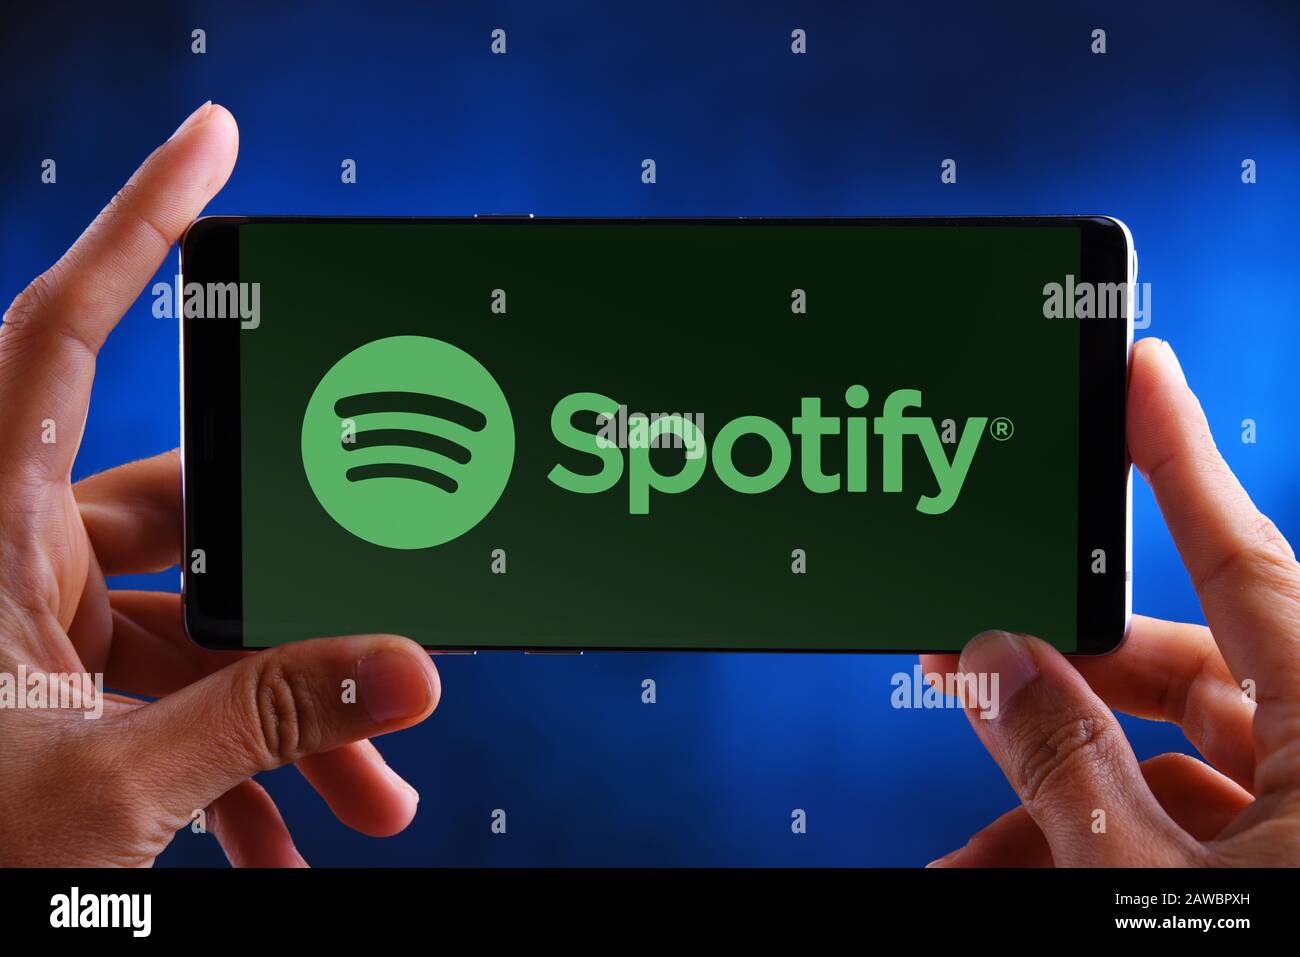 Poznan, POL - 10 JUILLET 2019 : un smartphone avec les mains portant le logo de Spotify, une plate-forme de diffusion audio suédoise qui fournit de la musique et des podcasts f Banque D'Images